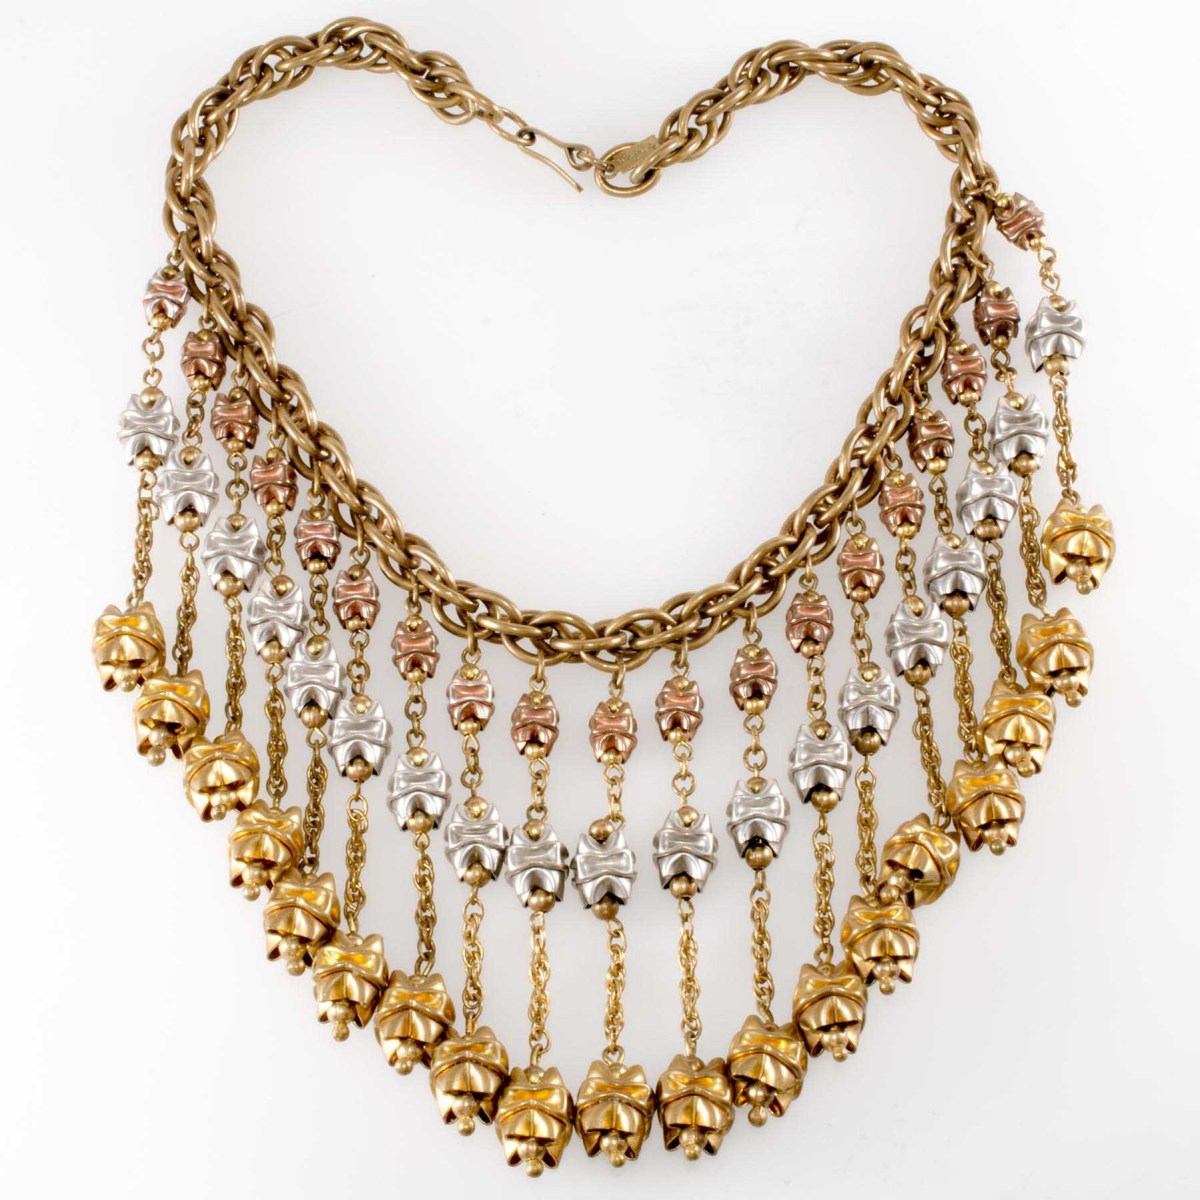 Monet Jewelers necklace, c. 1939.